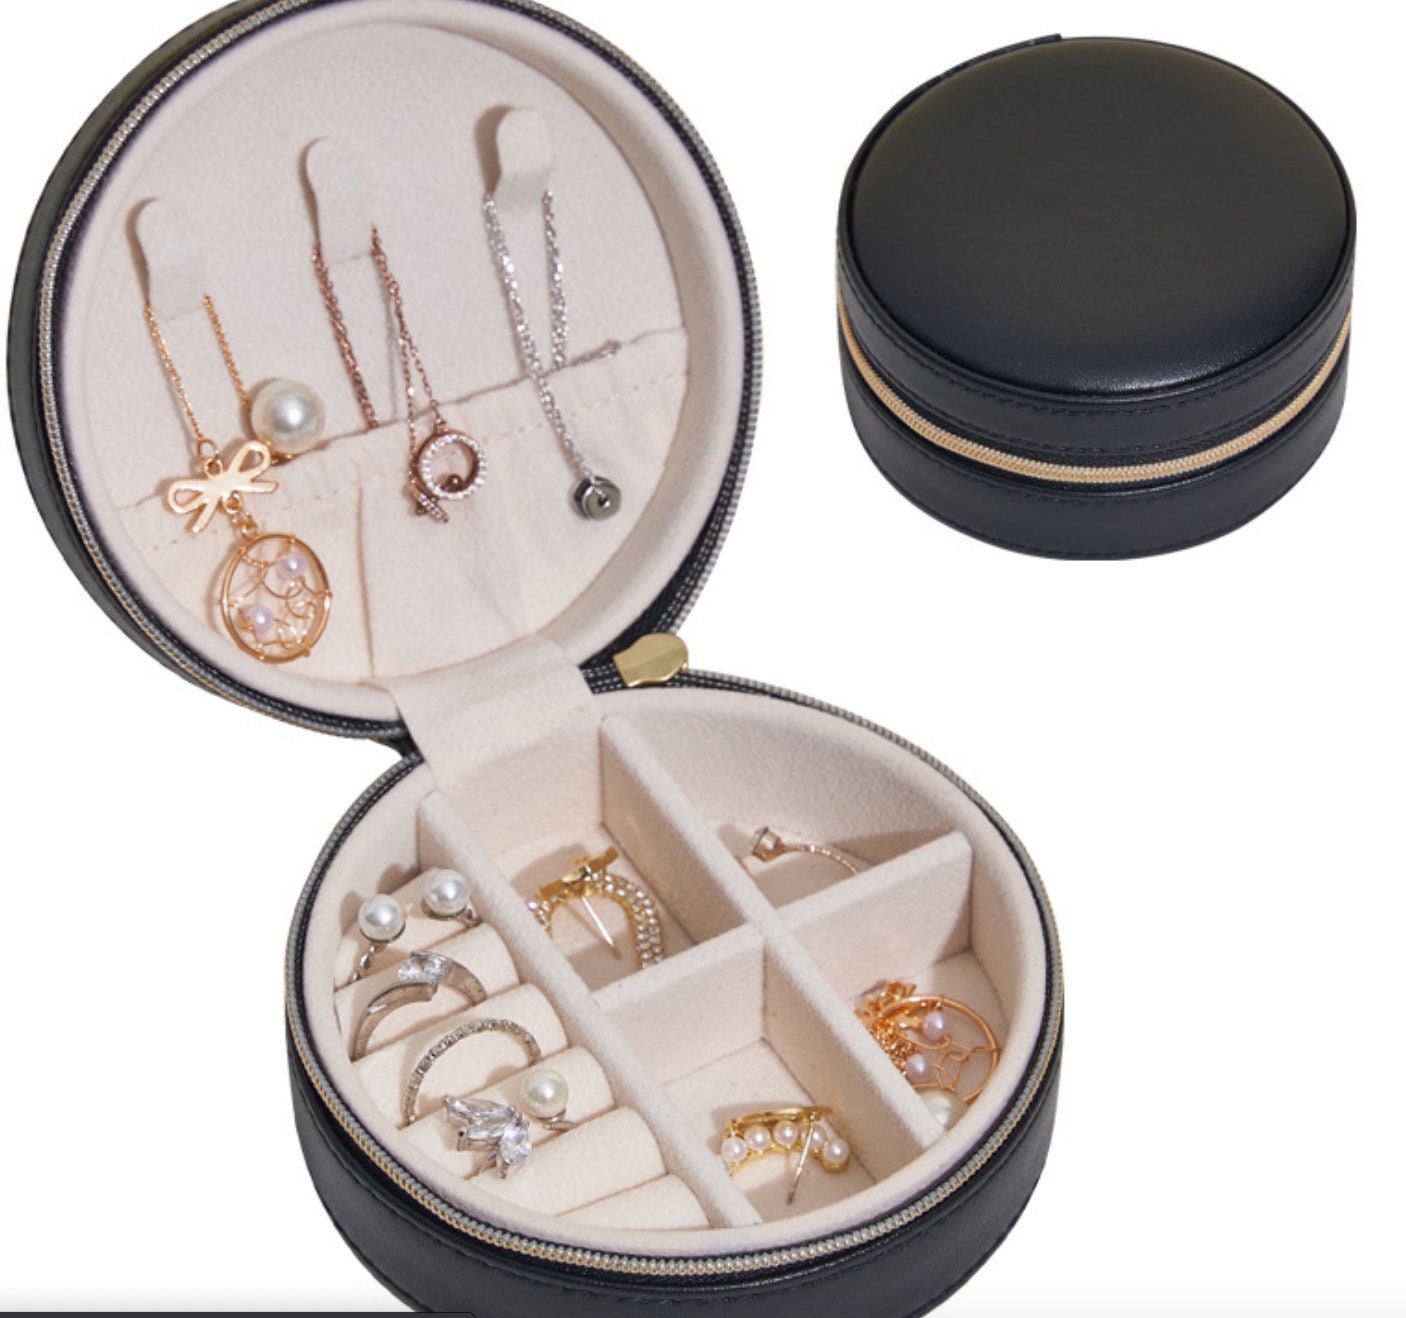 minimalist jewelry box interior in black & gold  color